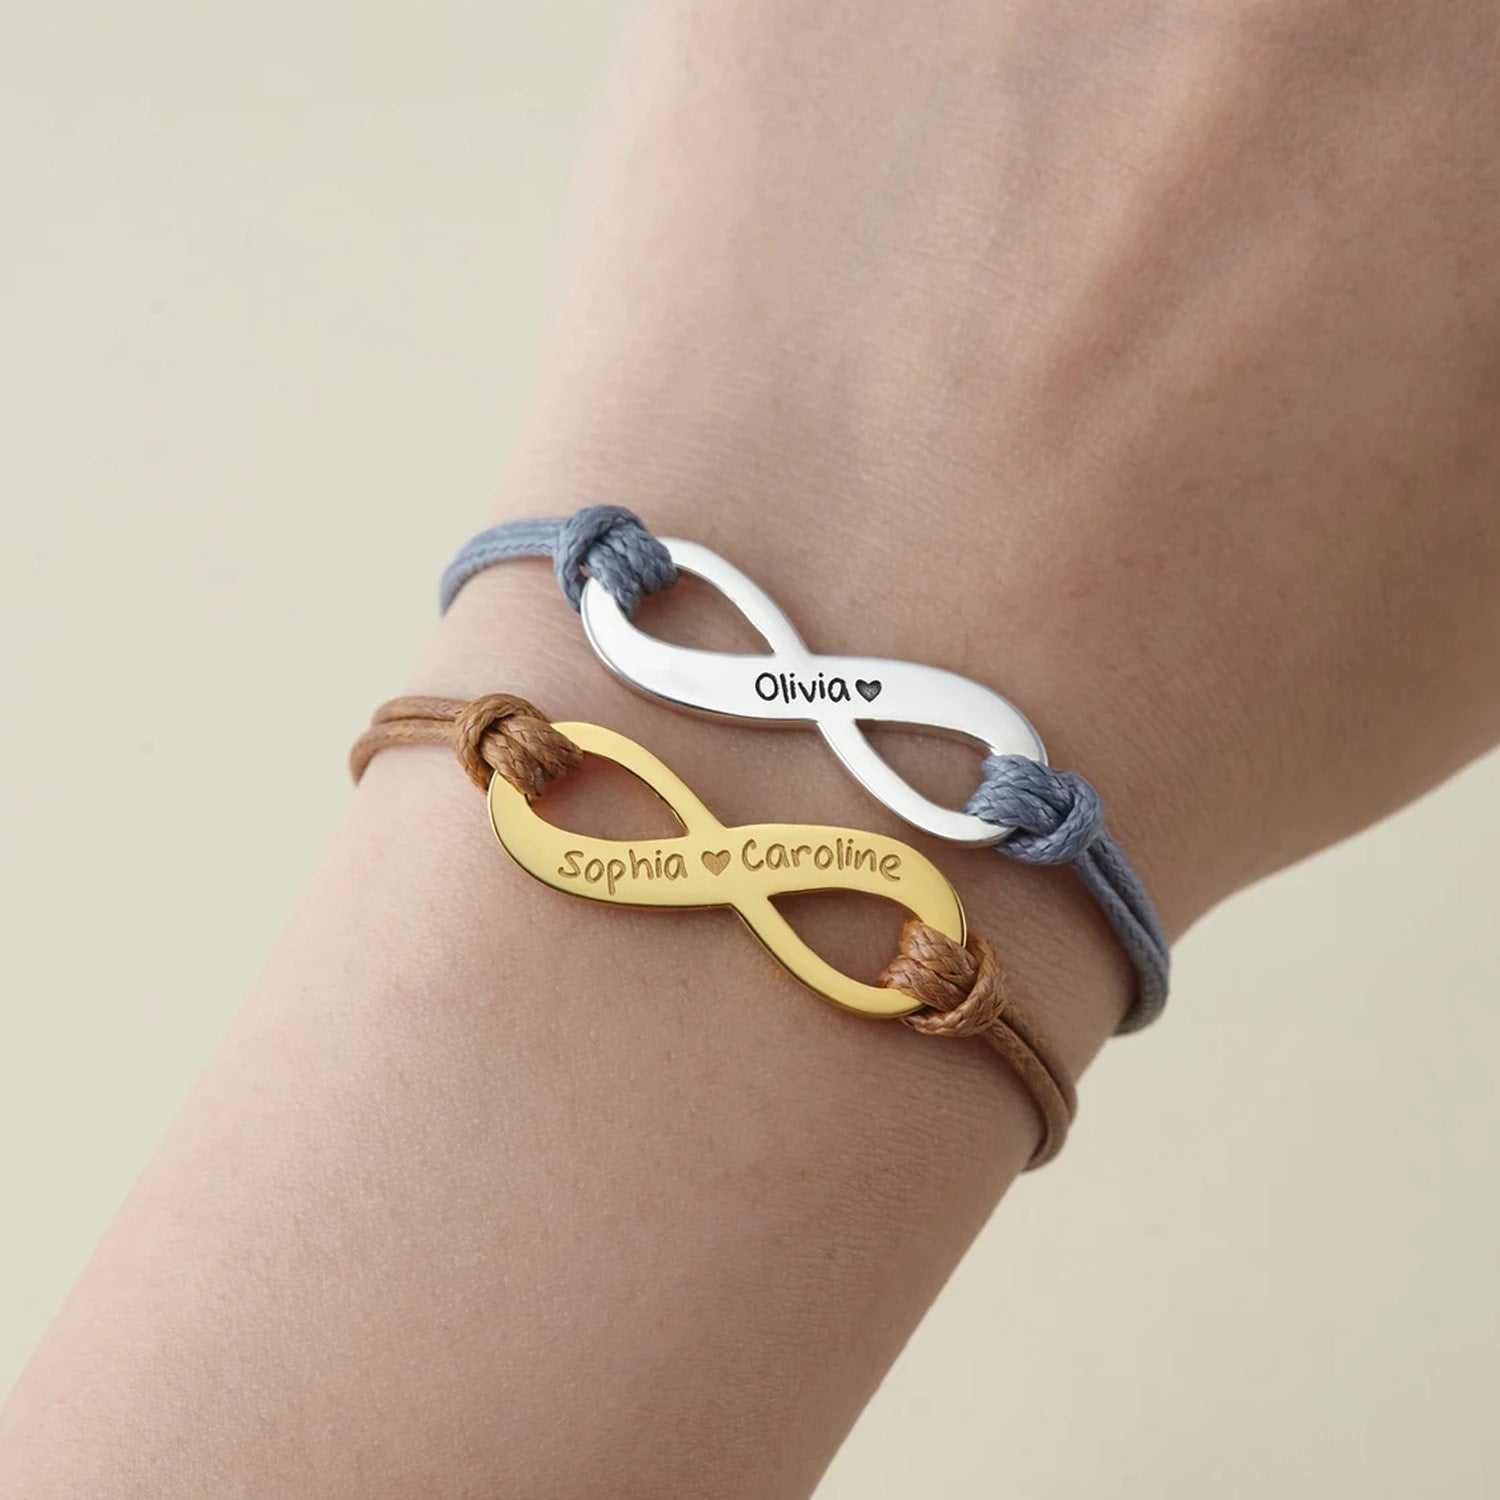 Totwoo | ALWAYS Hexagram Smart Couples Bracelets - Best Gift!